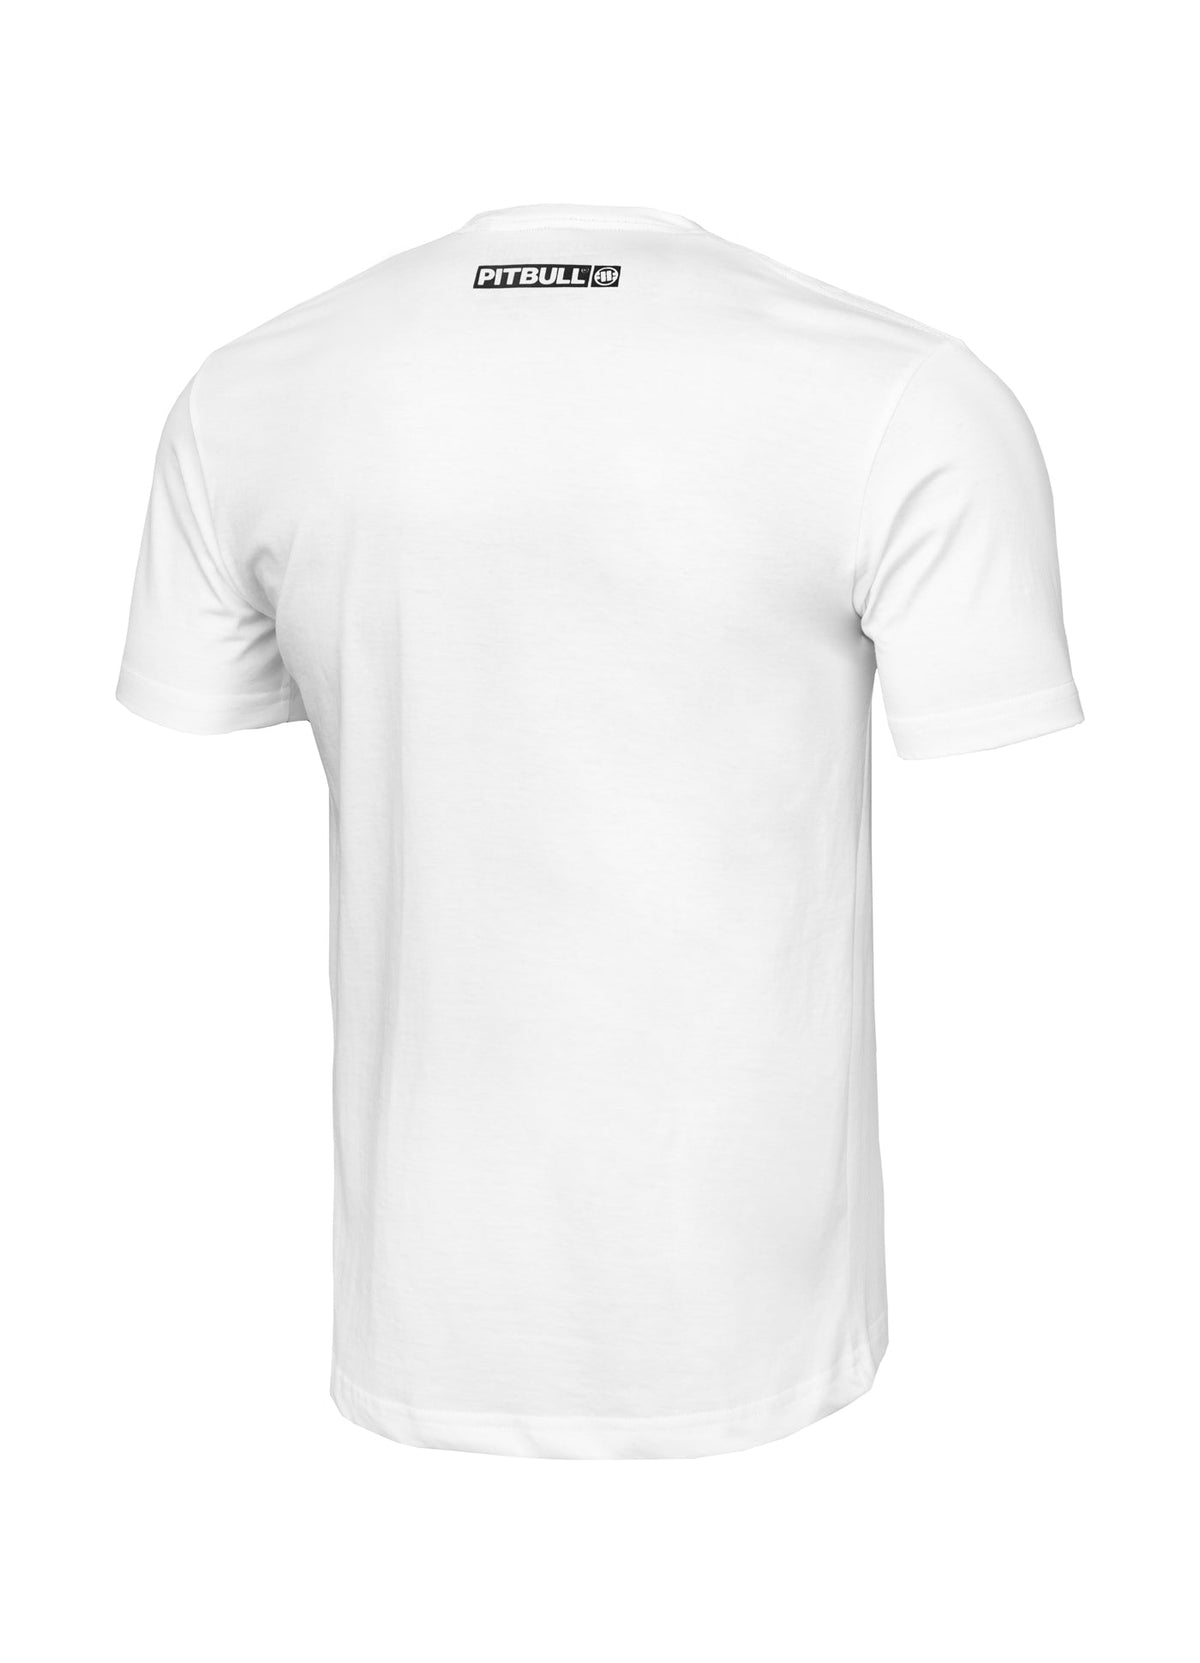 HILLTOP Lightweight White T-shirt